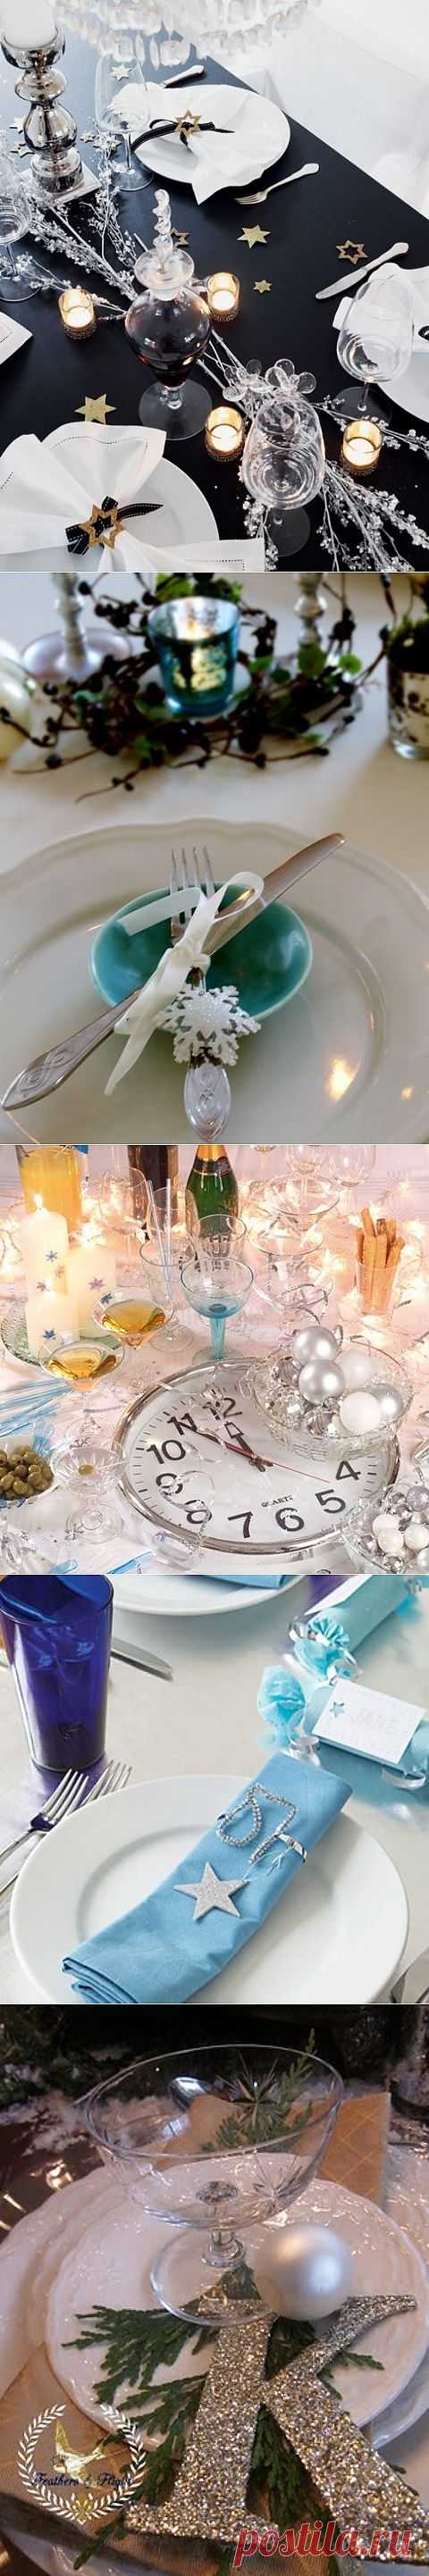 Красивые и яркие идеи декора новогоднего стола